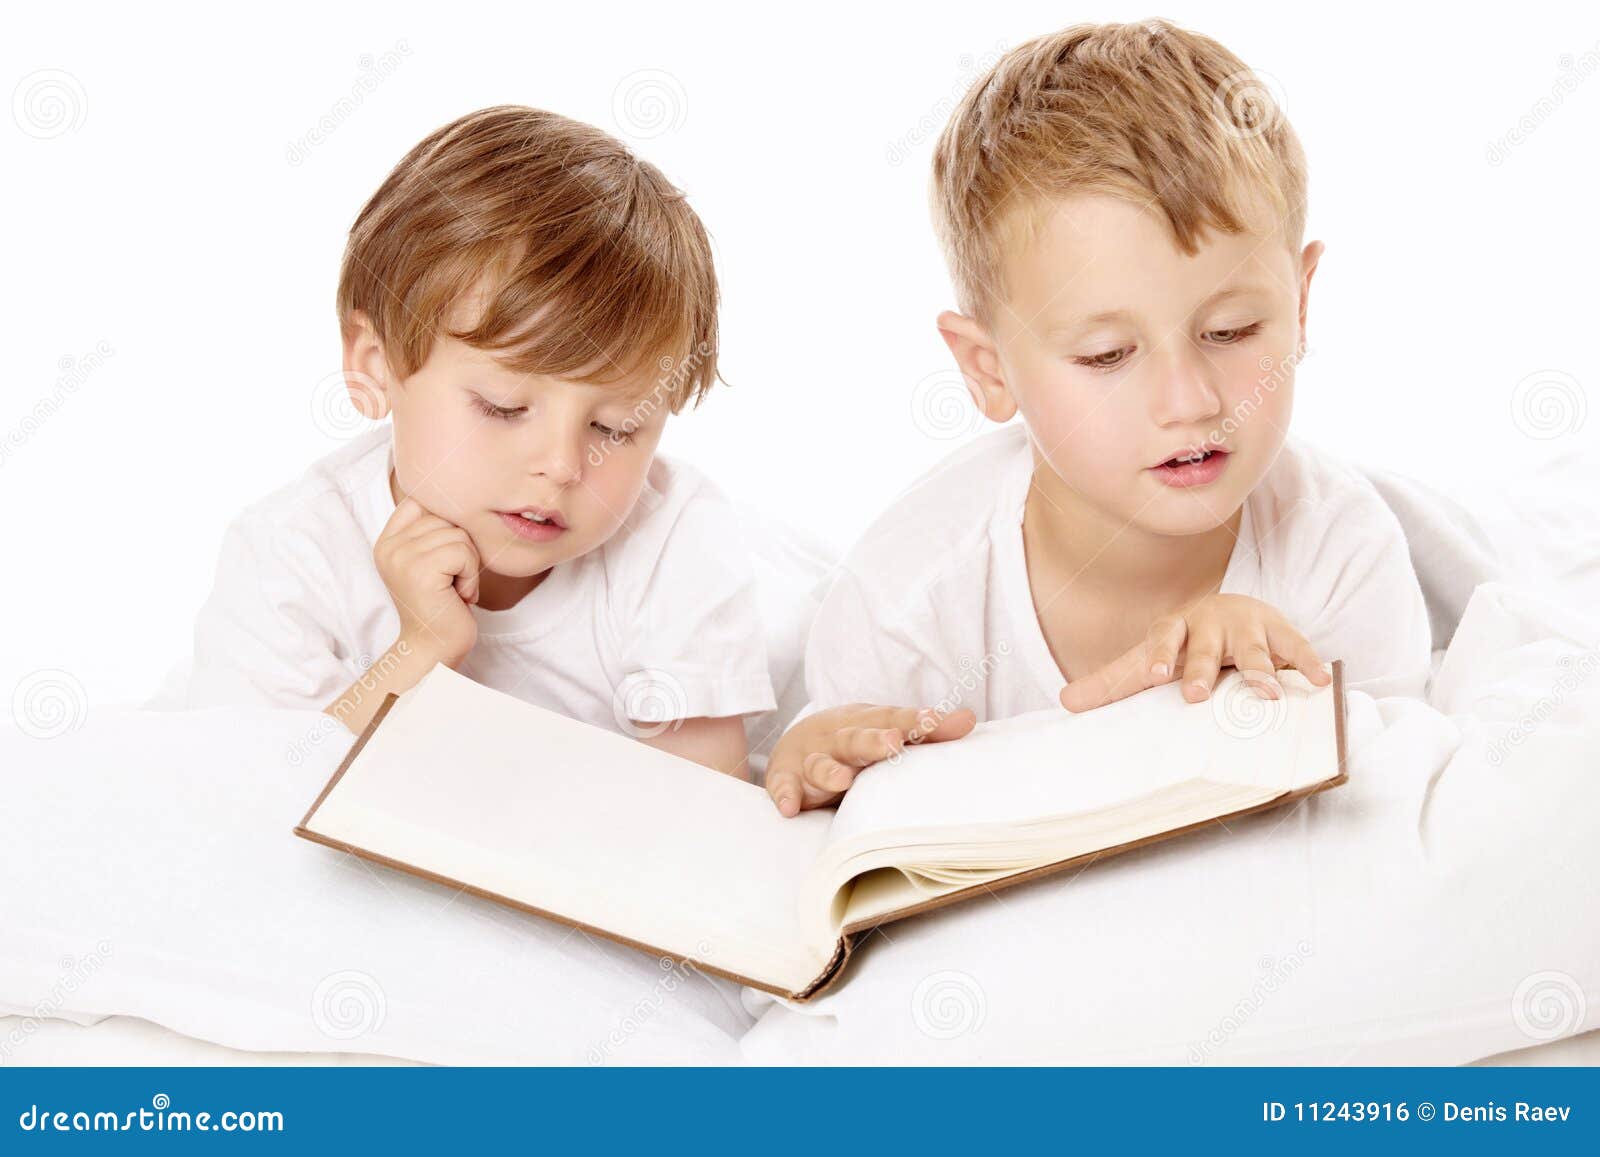 Брат читать 18. Два брата читают книгу. Картинка братья с книгами. Мальчик читает книжку маленькому братику. Два братика.